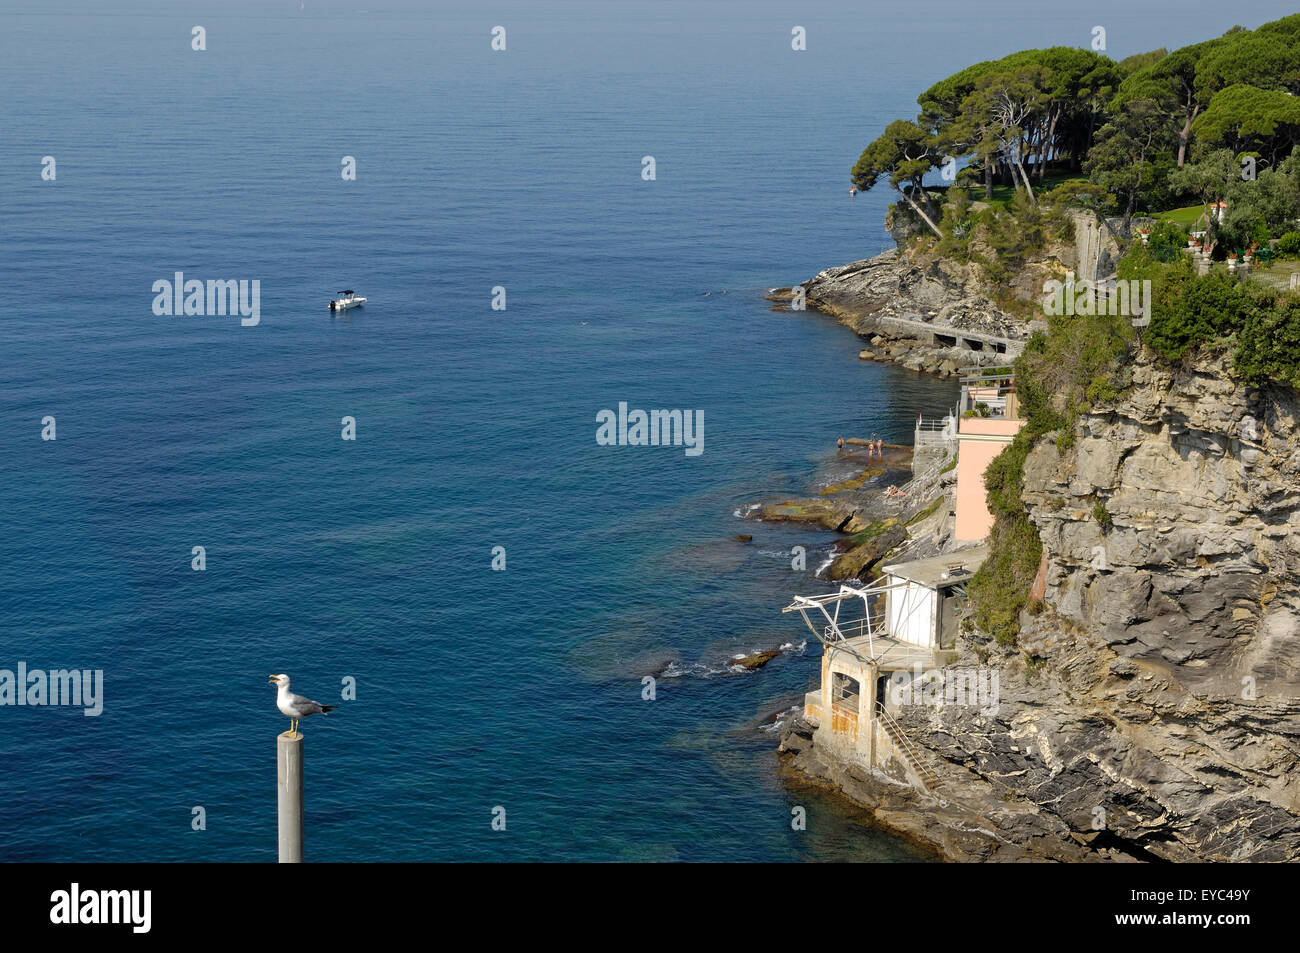 Un aperçu de la côte sauvage de Ligurie près de Pieve Ligure Banque D'Images